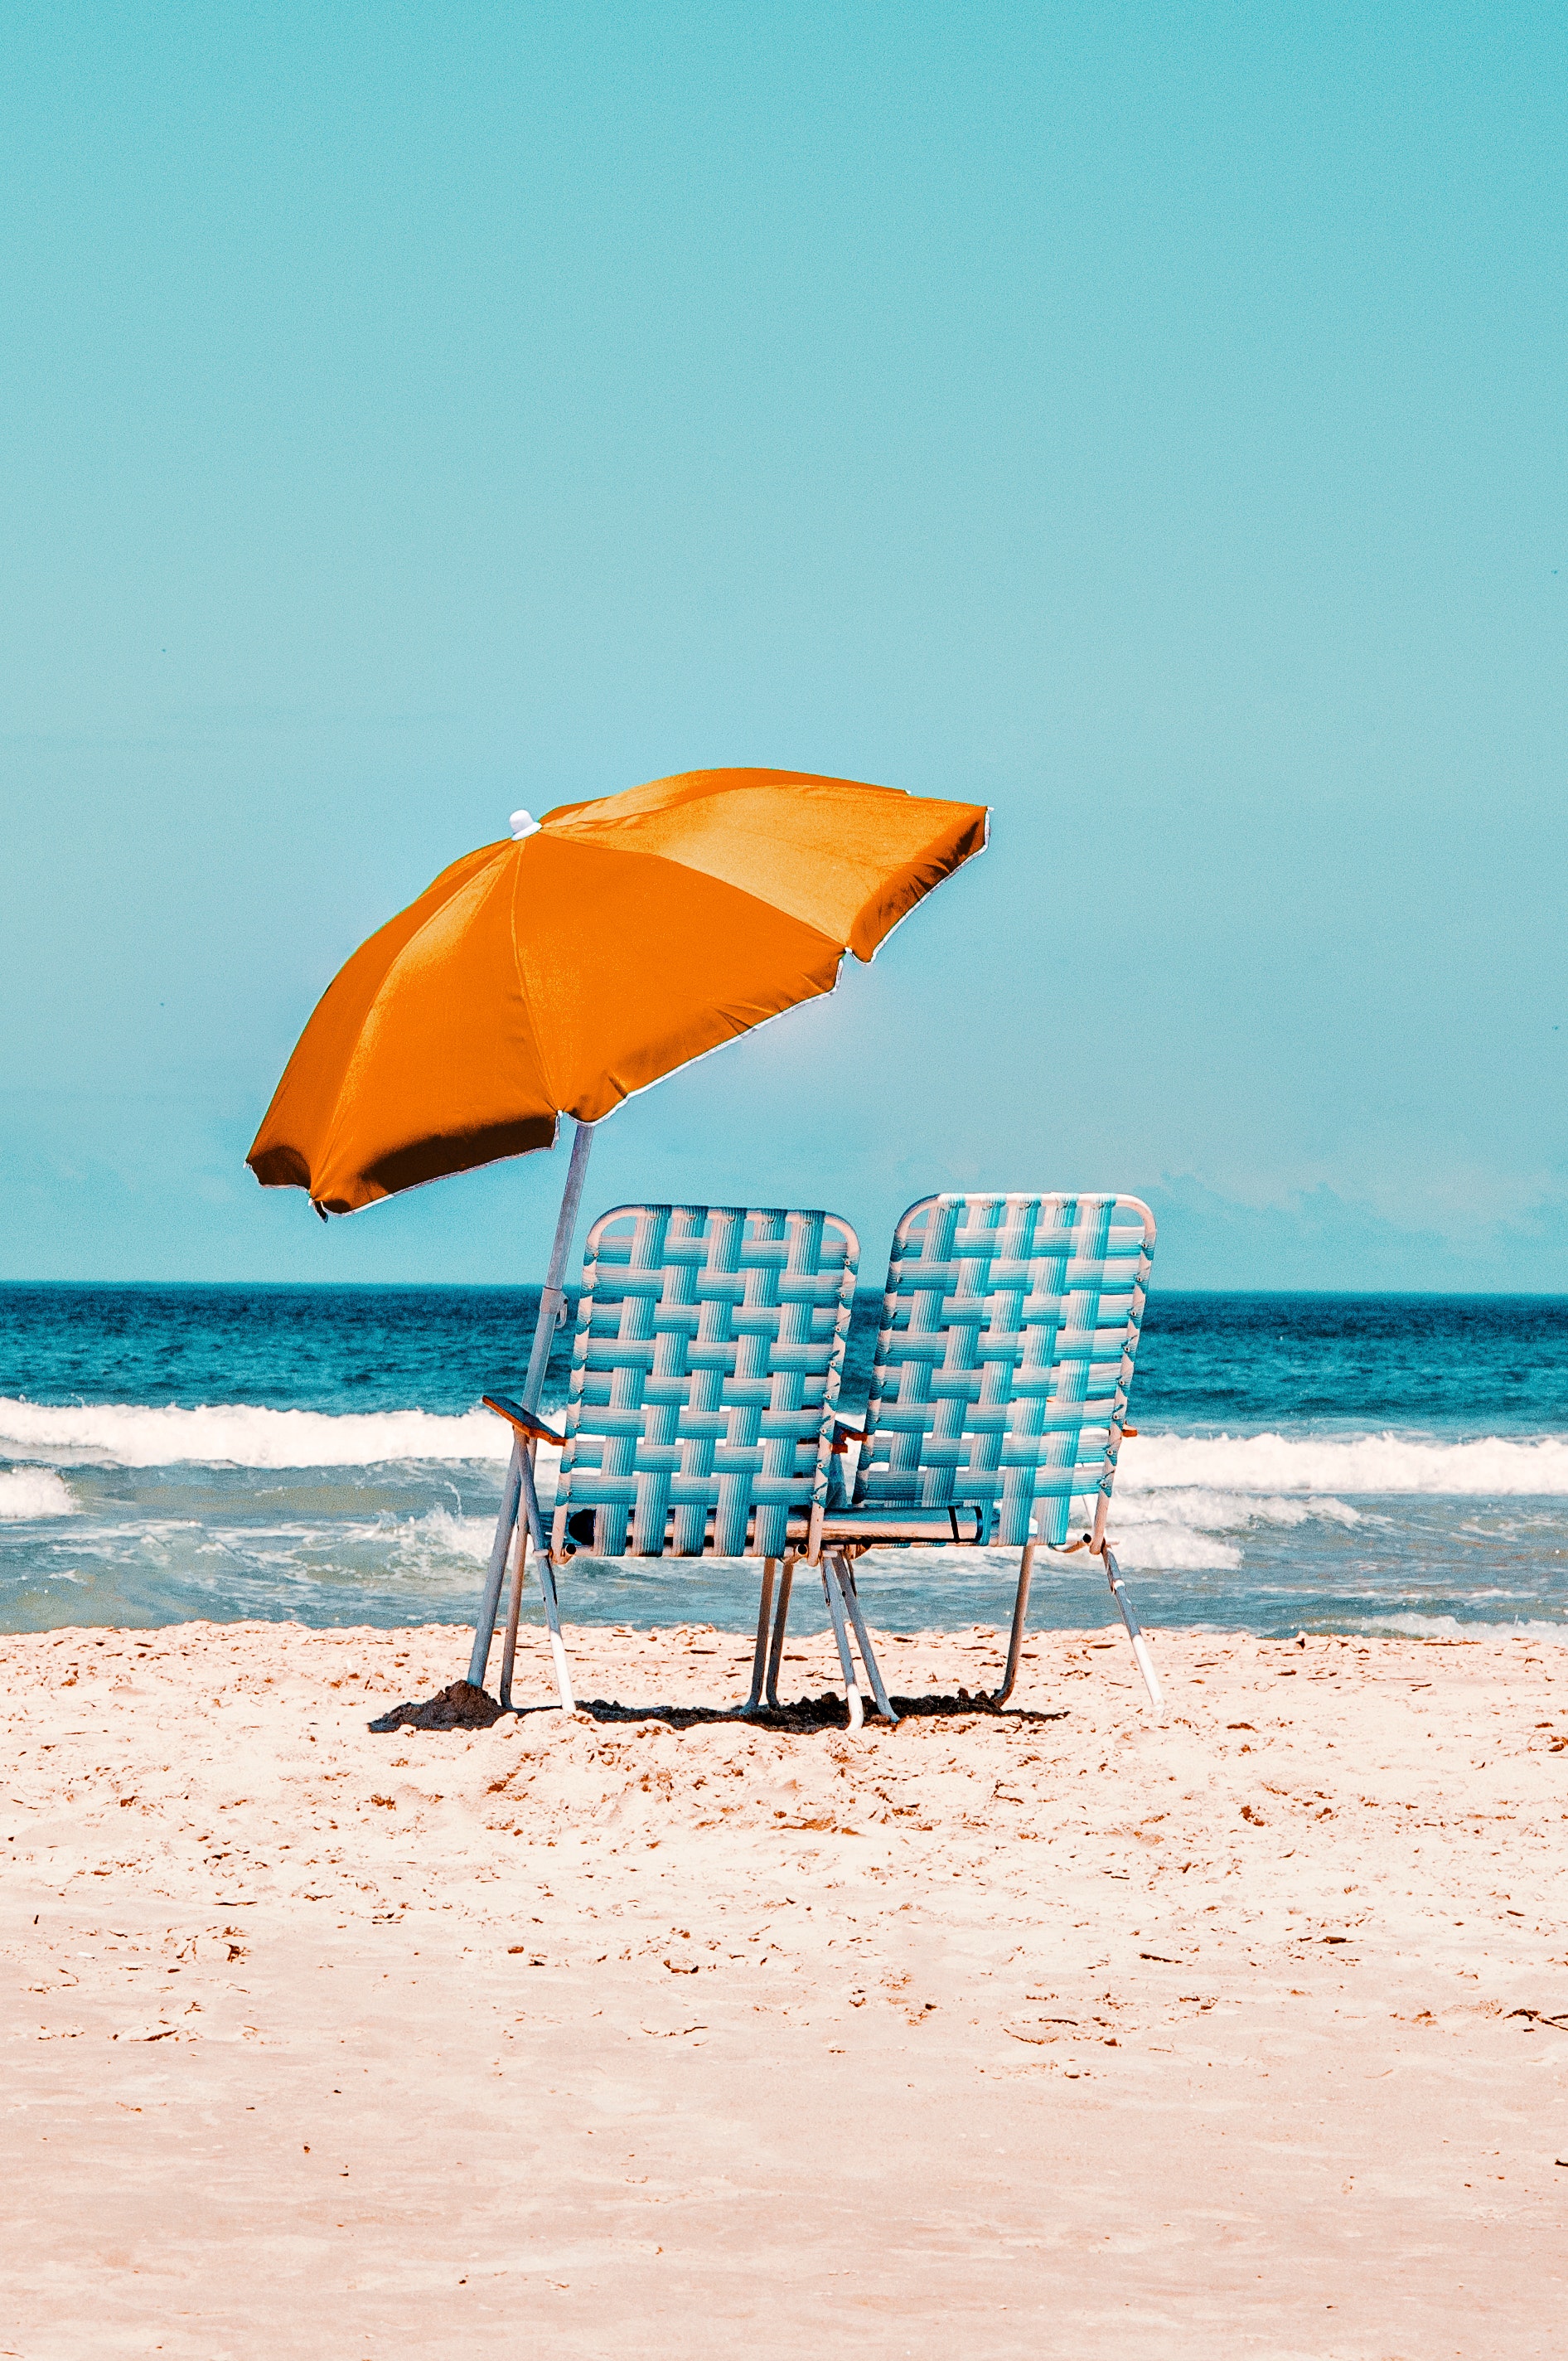 Twee strandstoelen met een parasol. In het zand geplaatst, gericht op de zee